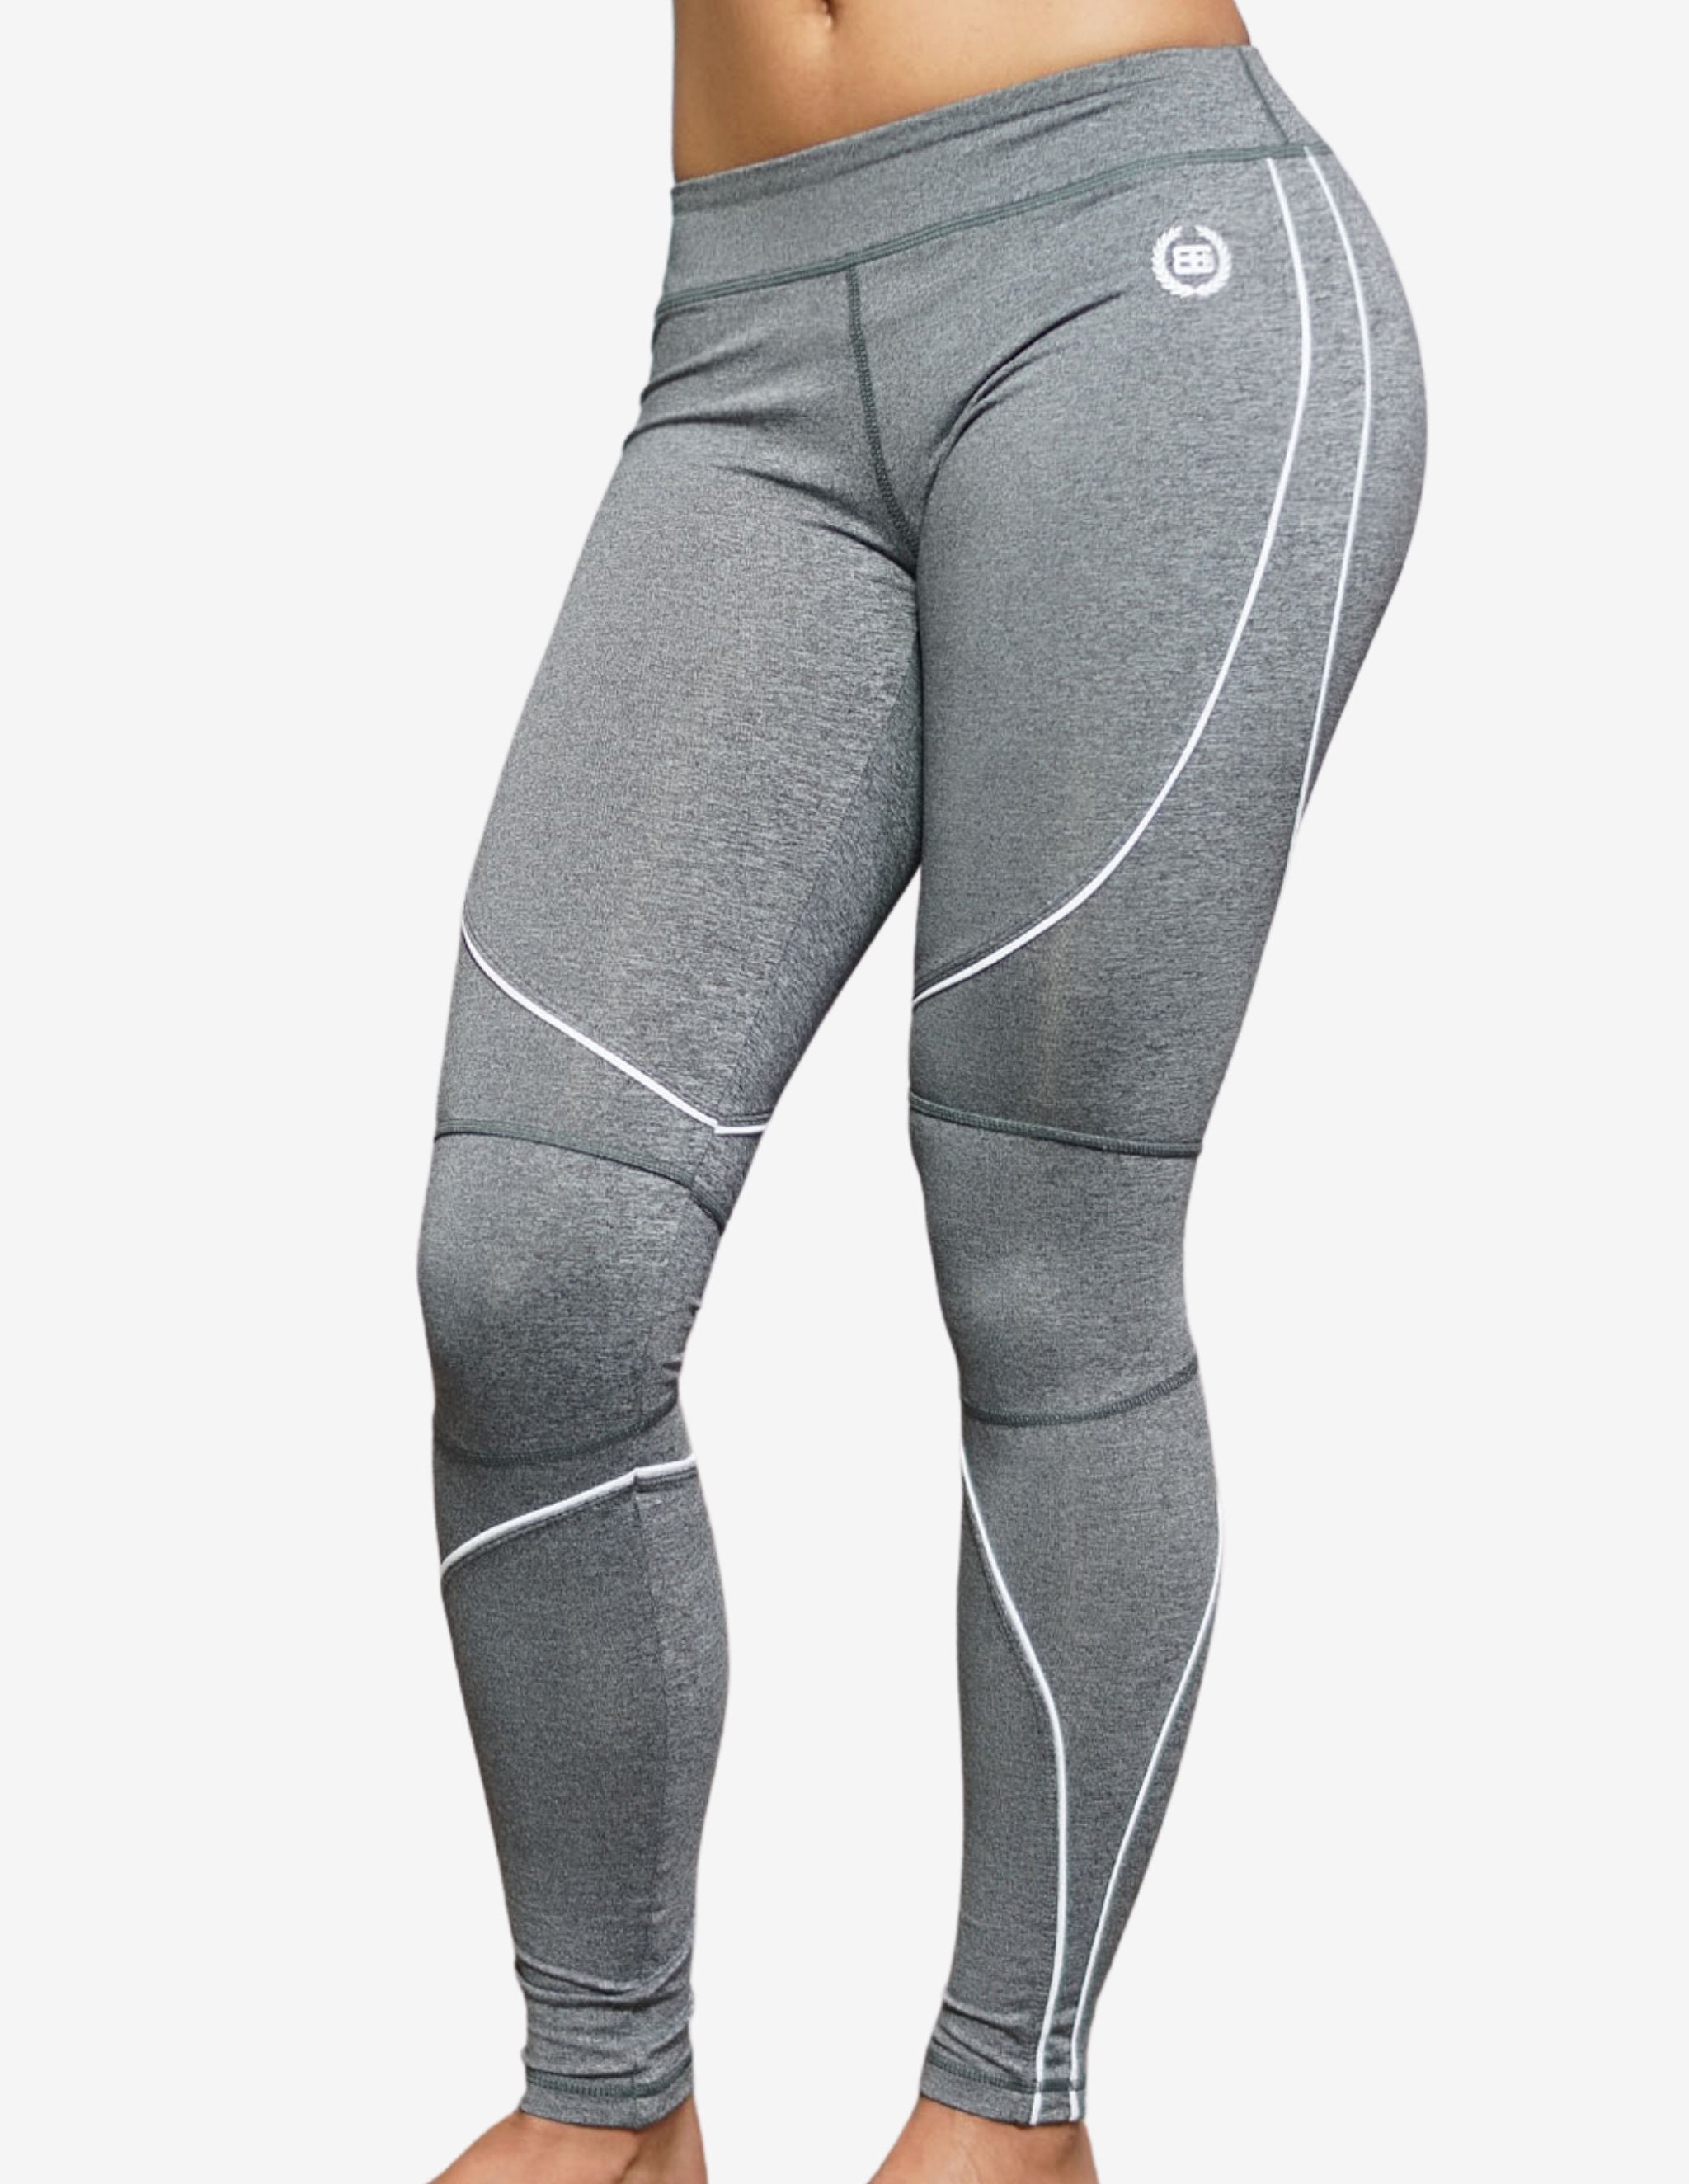 ATHENA spider leggings – Grey-Leggings-Body Engineers-Guru Muscle